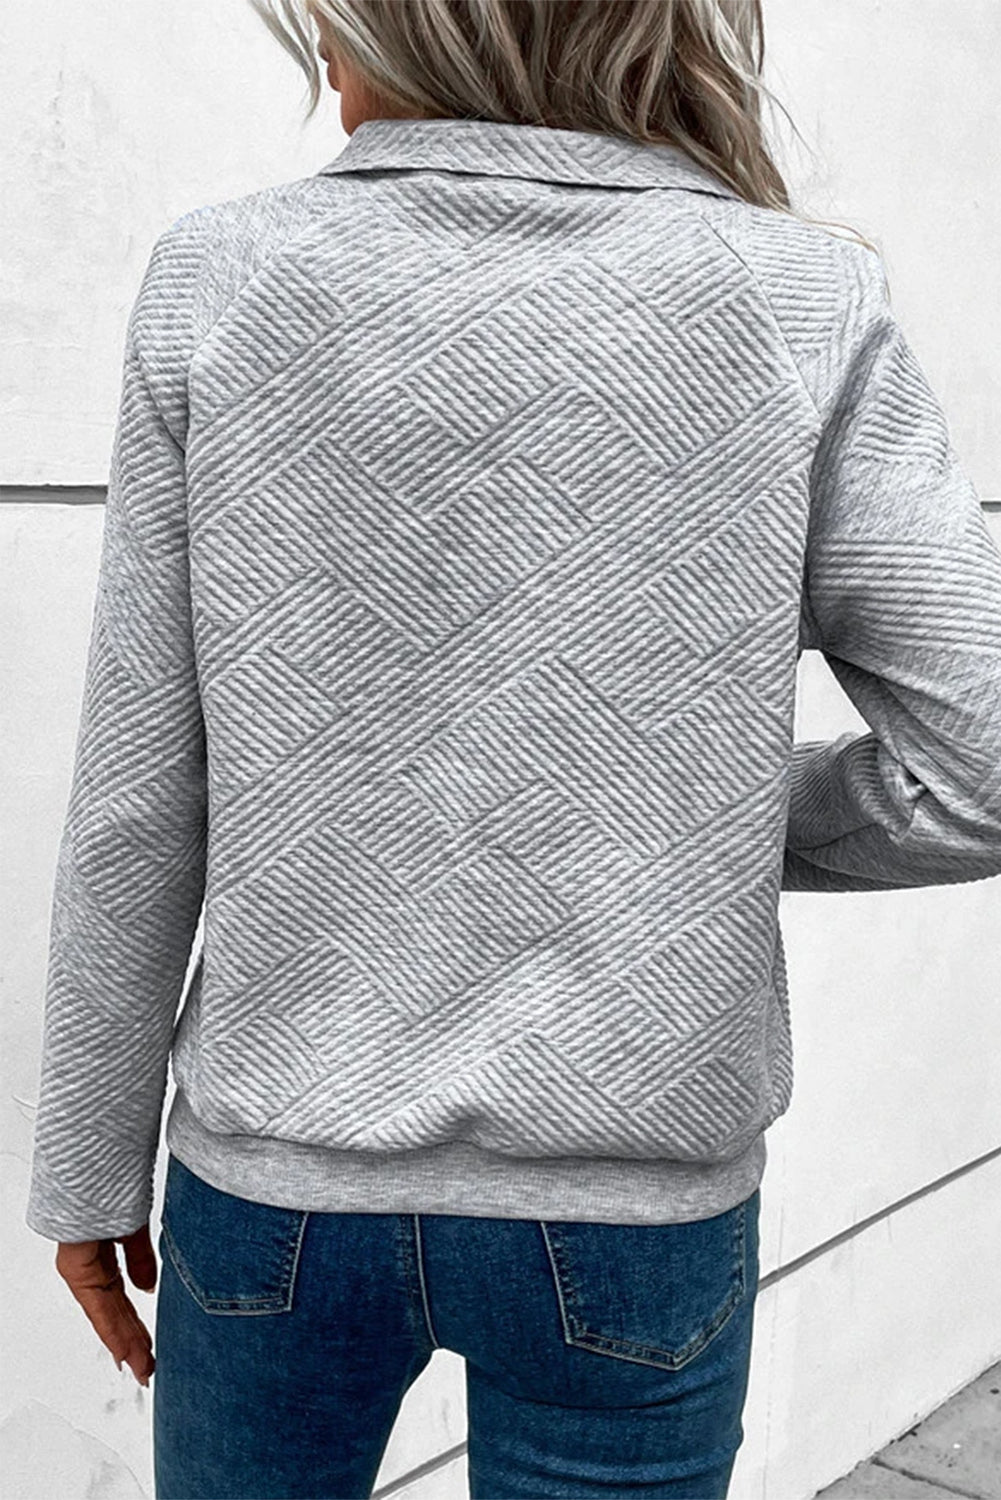 Sweat-shirt boutonné en tricot texturé kaki pâle avec poche kangourou